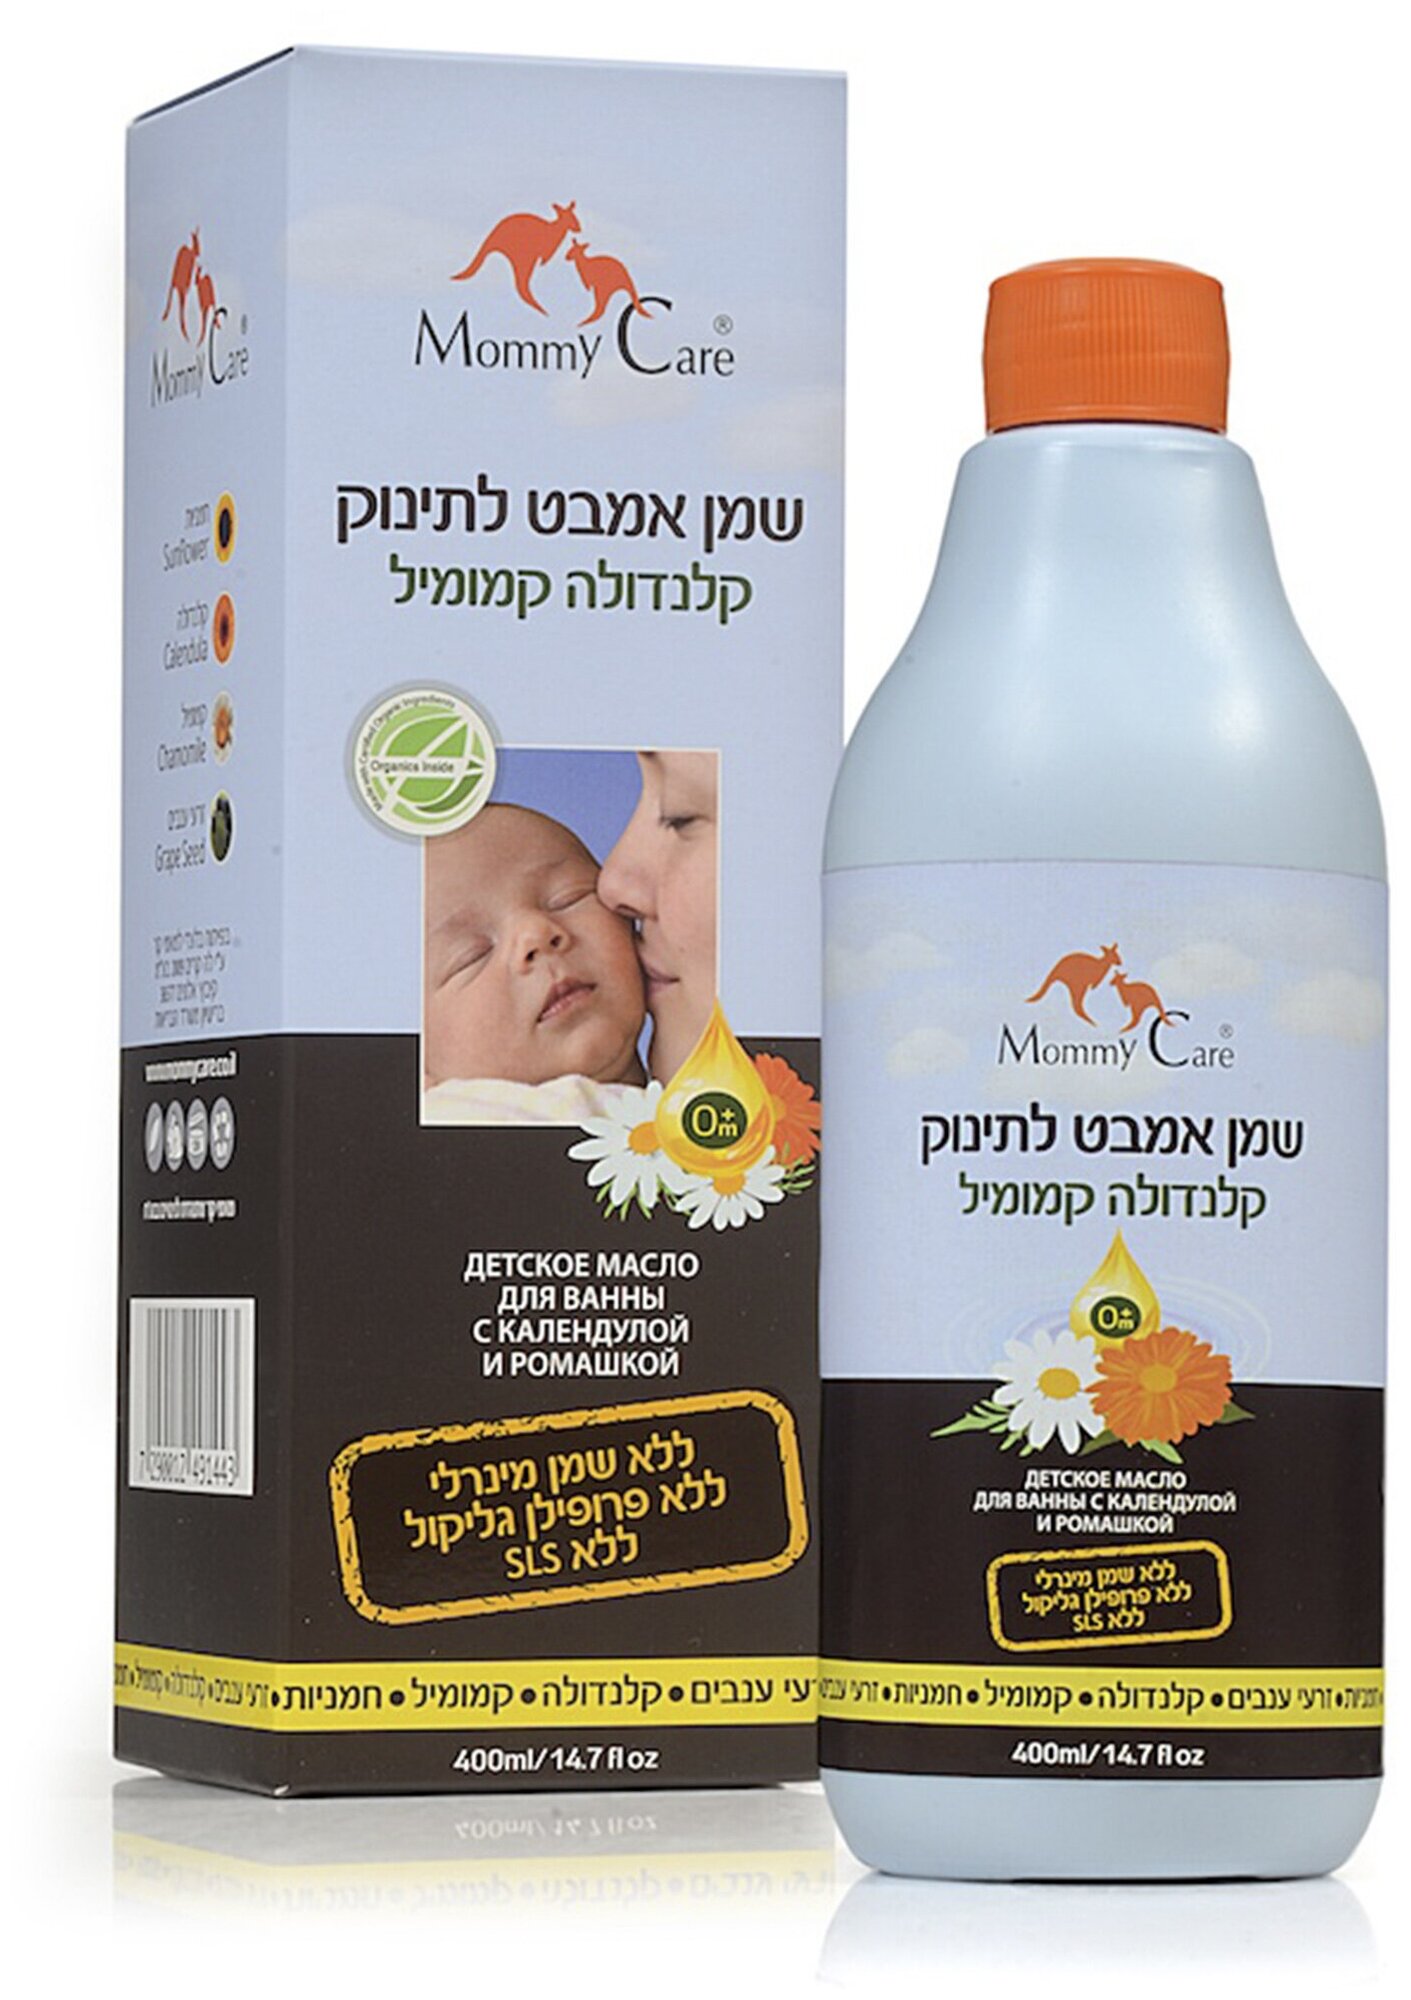 Mommy Care Детское масло для ванны с календулой и ромашкой 0+, 400 мл. , мод. 1443